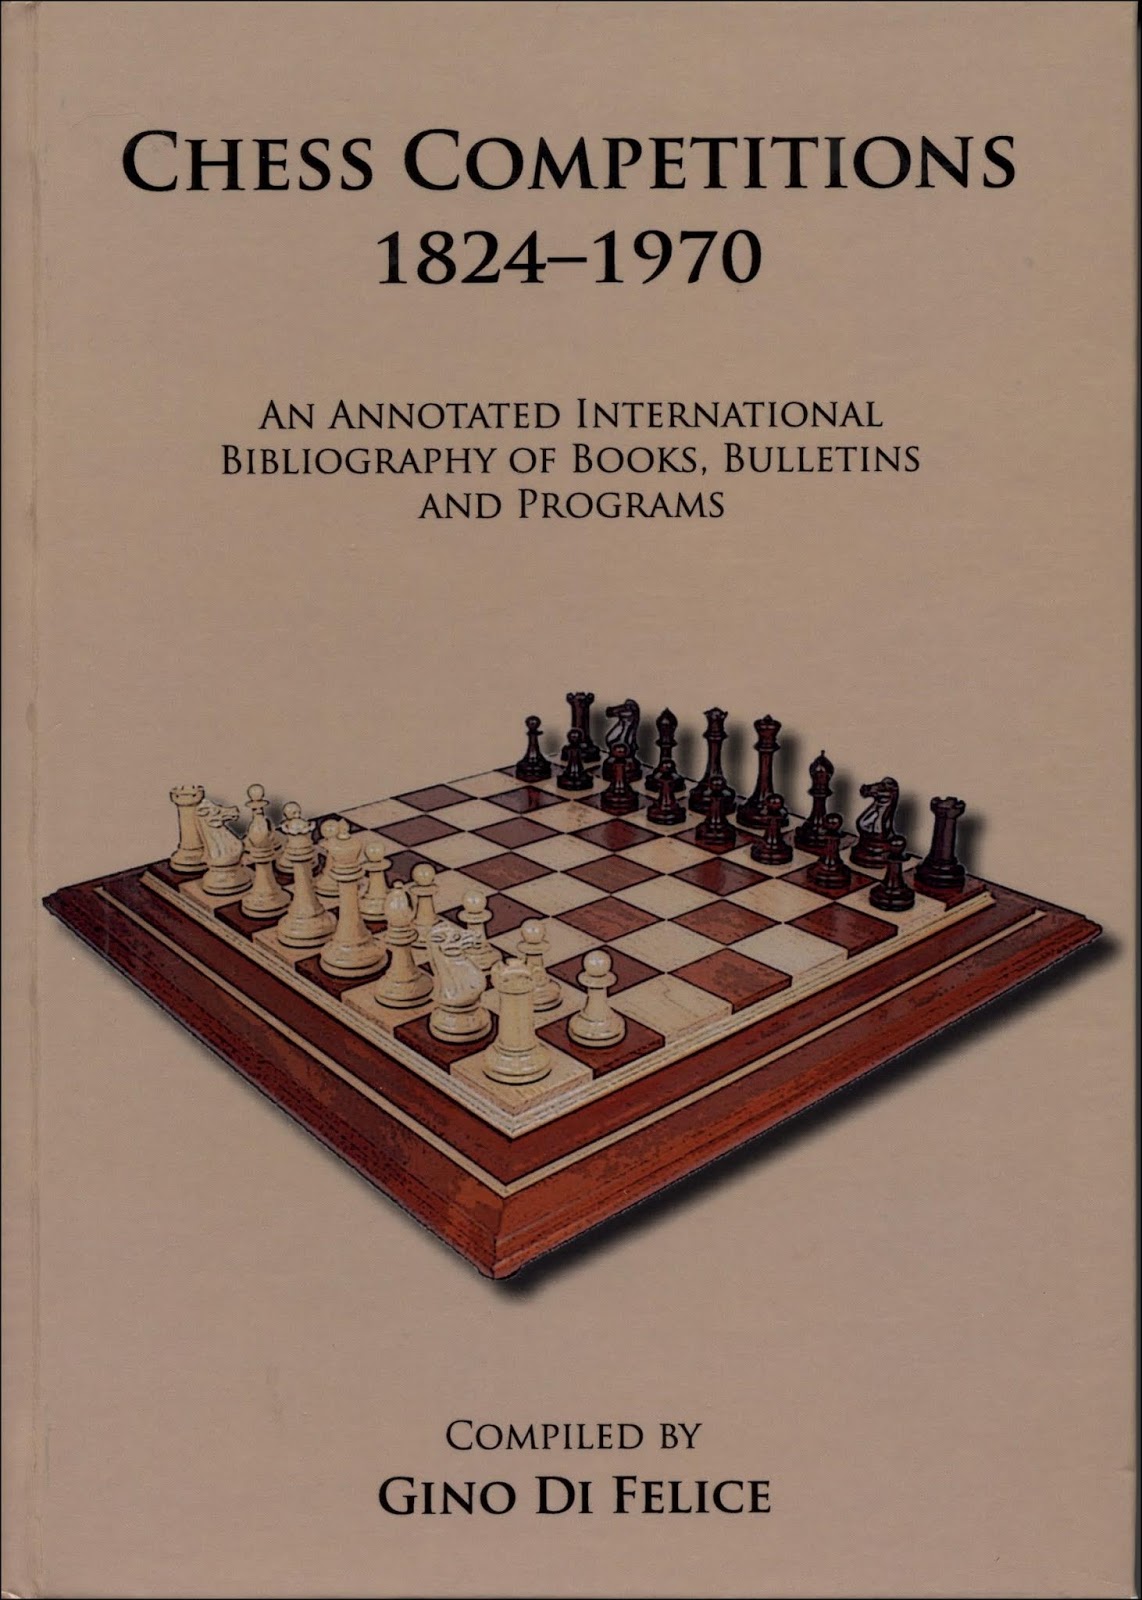 Book Chess of games International tournament in Switzerland - Inspire Uplift